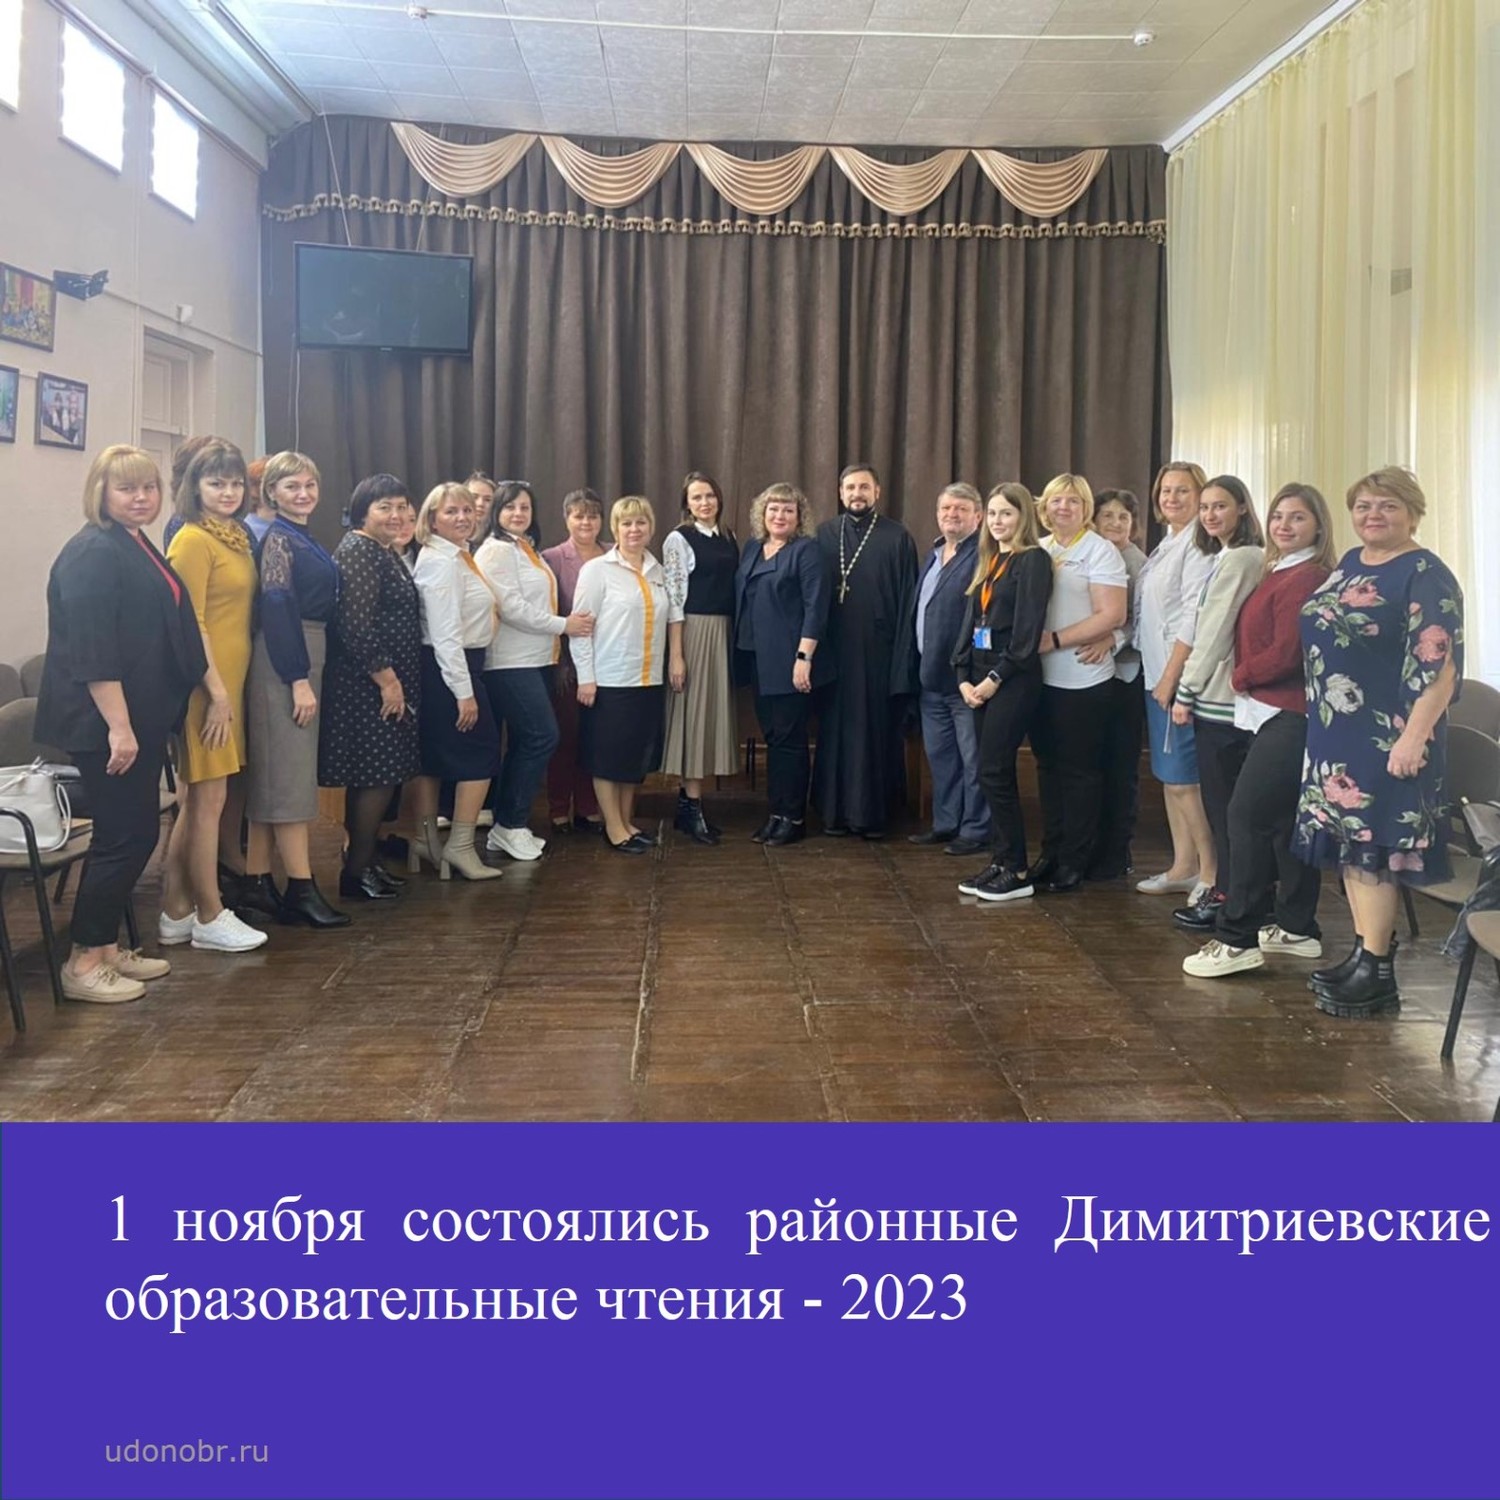 1 ноября состоялись районные Димитриевские образовательные чтения - 2023